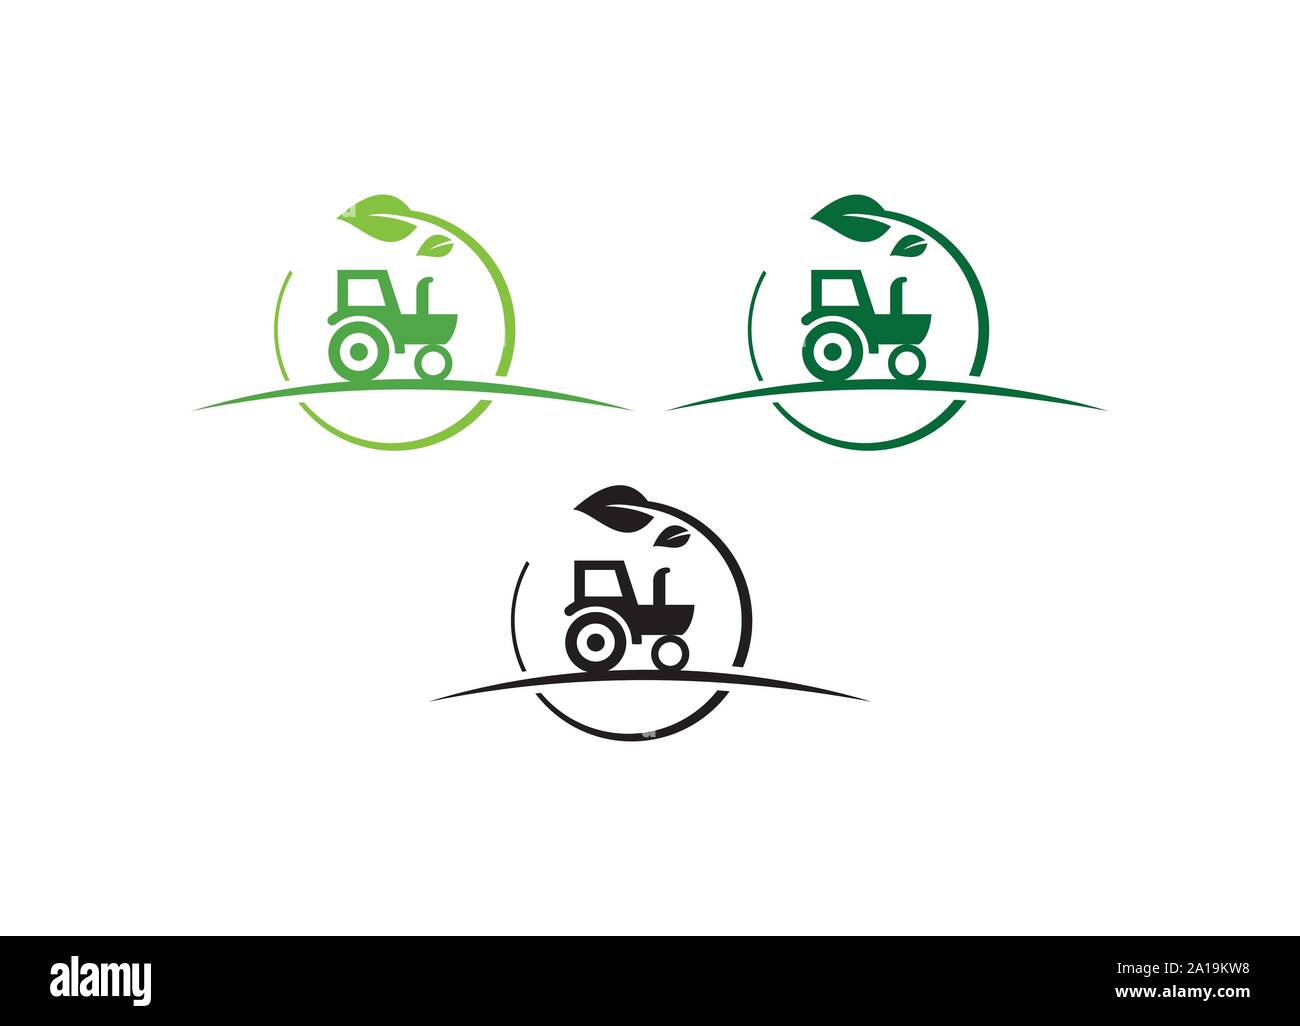 Agrar- und Landwirtschaft mit einem Traktor mit Anhänger und Pflug, Logo Design. Agrarwirtschaft, Eco-farm und ländliche Land, vektor design. Bauernhof Branchen Stock Vektor